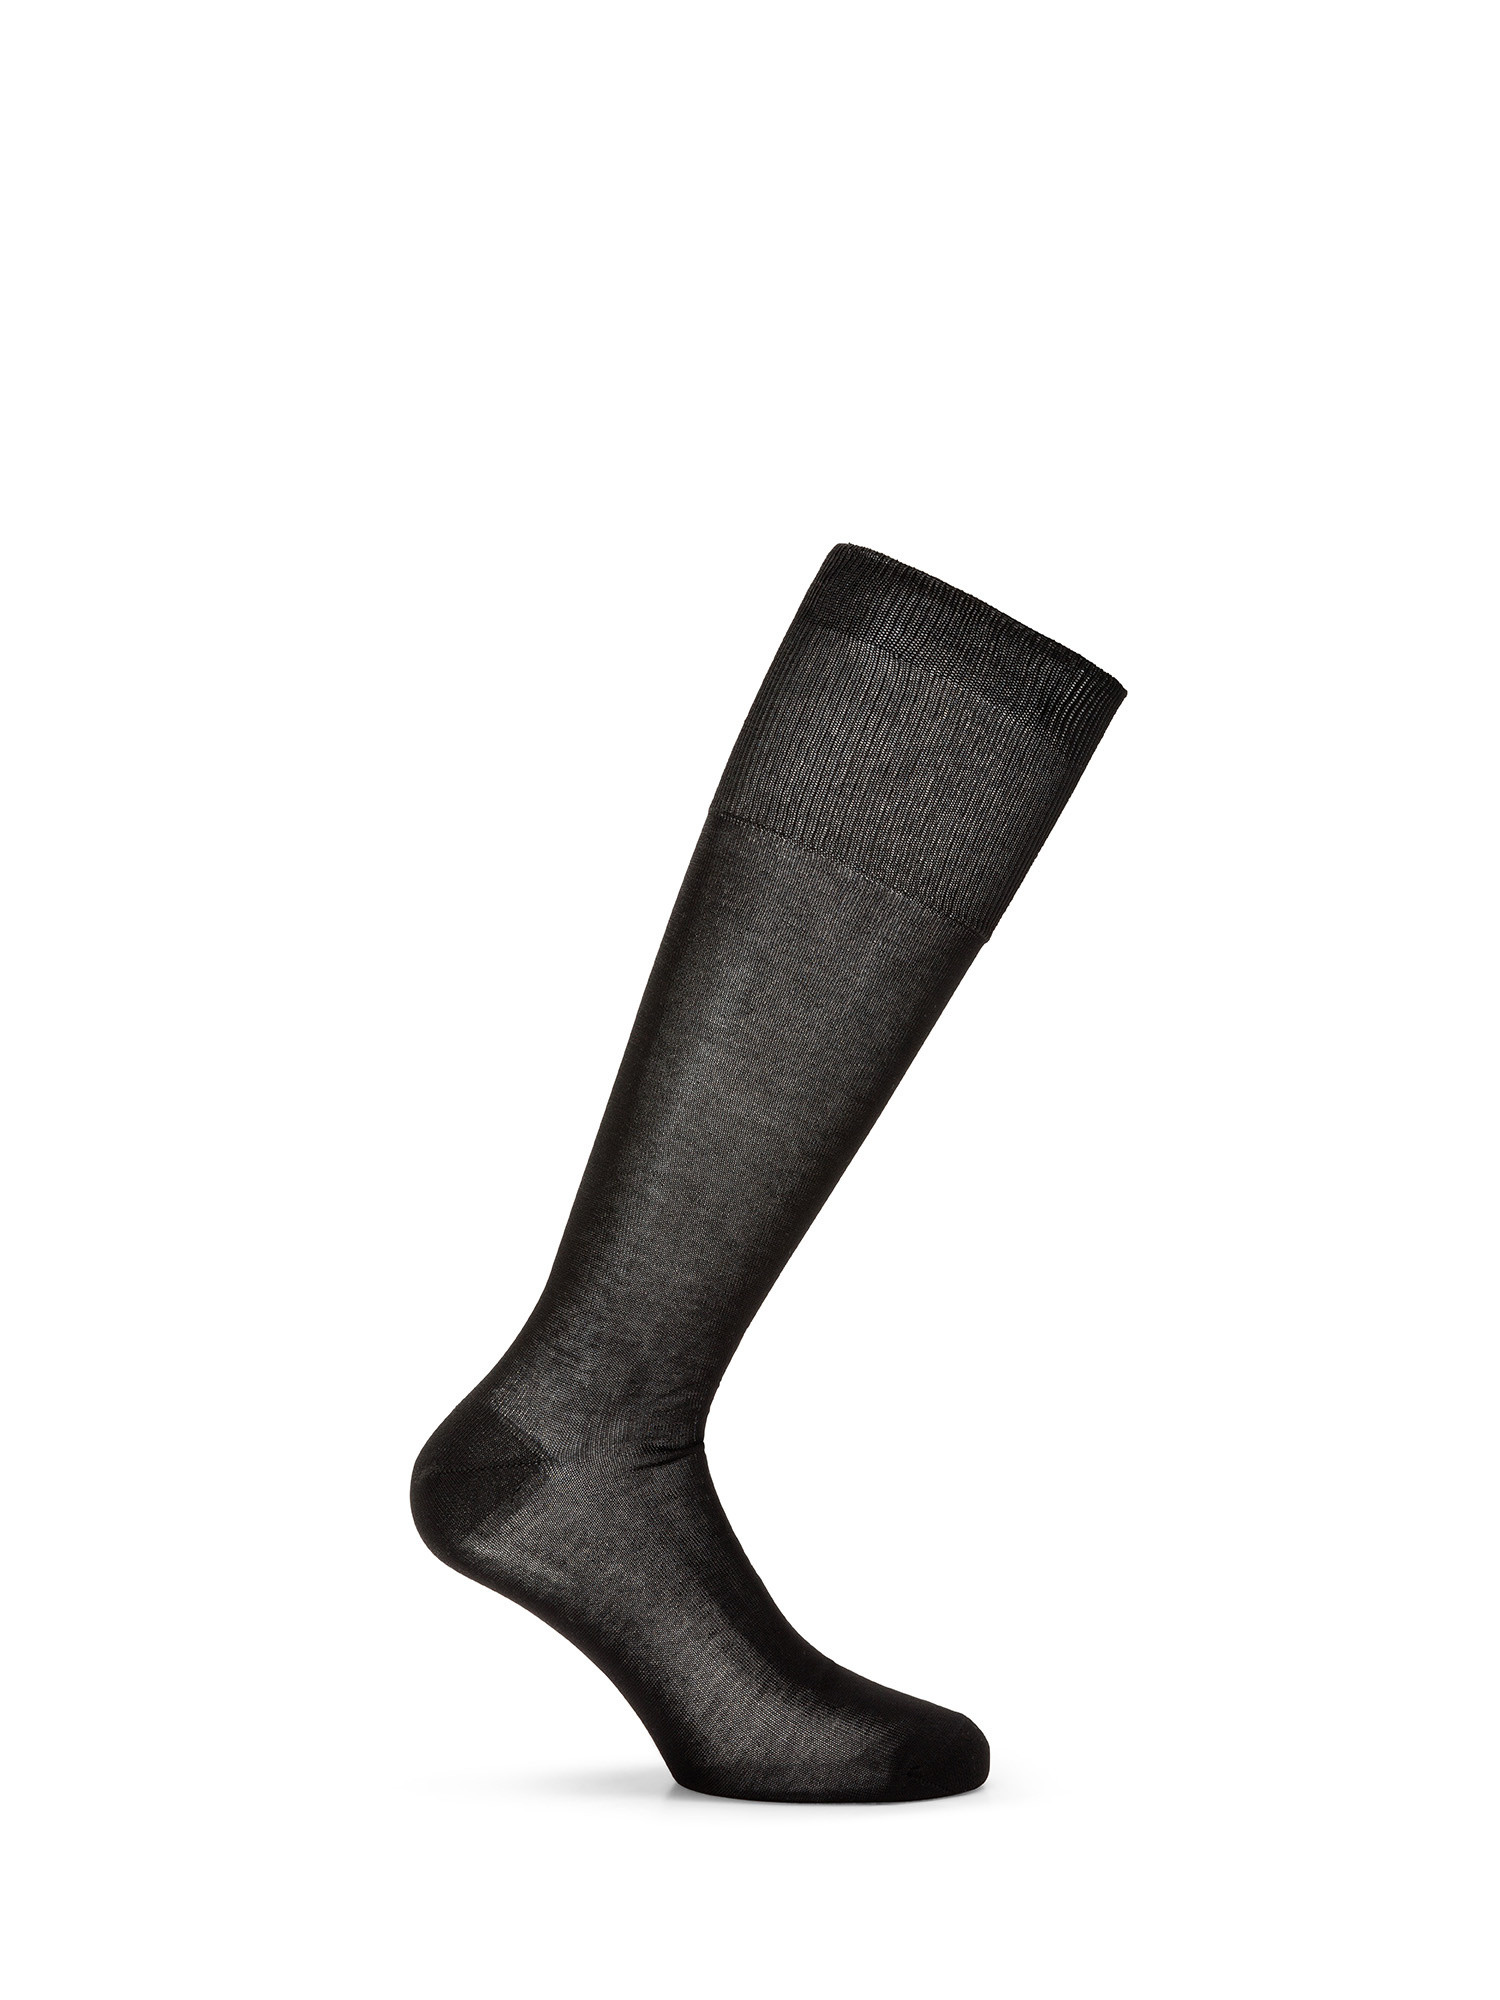 Luca D'Altieri - Set of 3 patterned short socks, Black, large image number 1